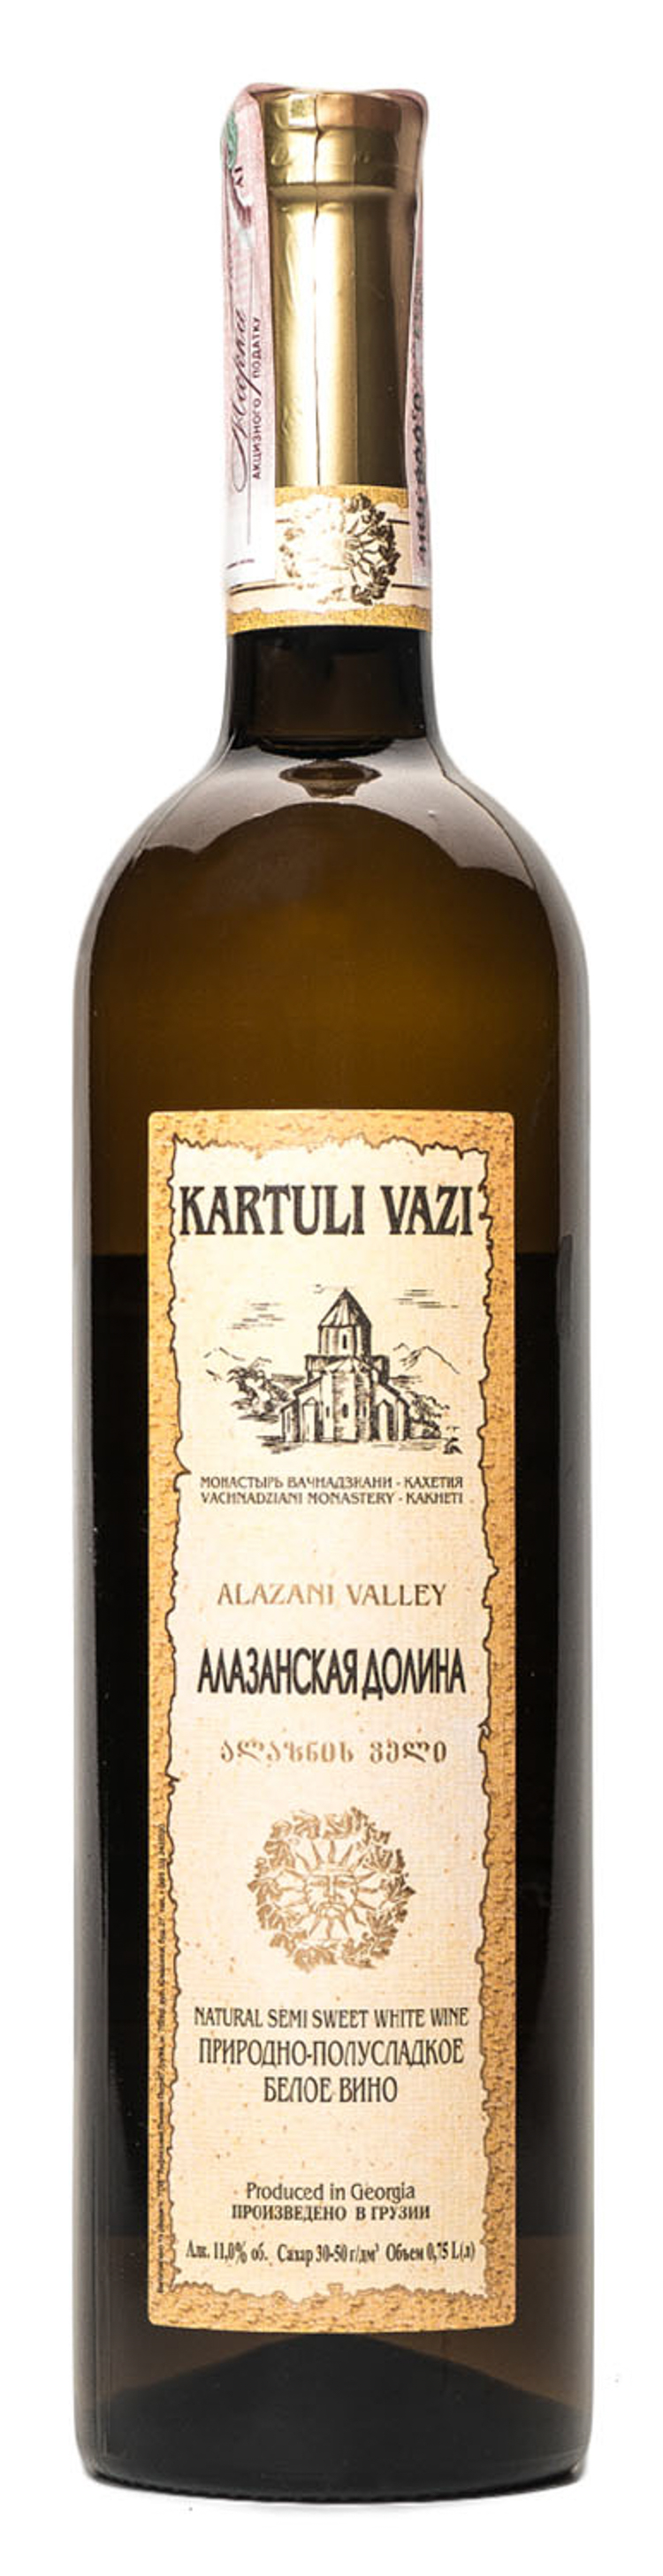 Алазанская долина. Вино kartuli vazi Алазанская Долина 0.75 л. Алазанская Долина вино столовое Грузия. Вино Алазанская Долина 0.75л. Вино Lekun Алазанская Долина.